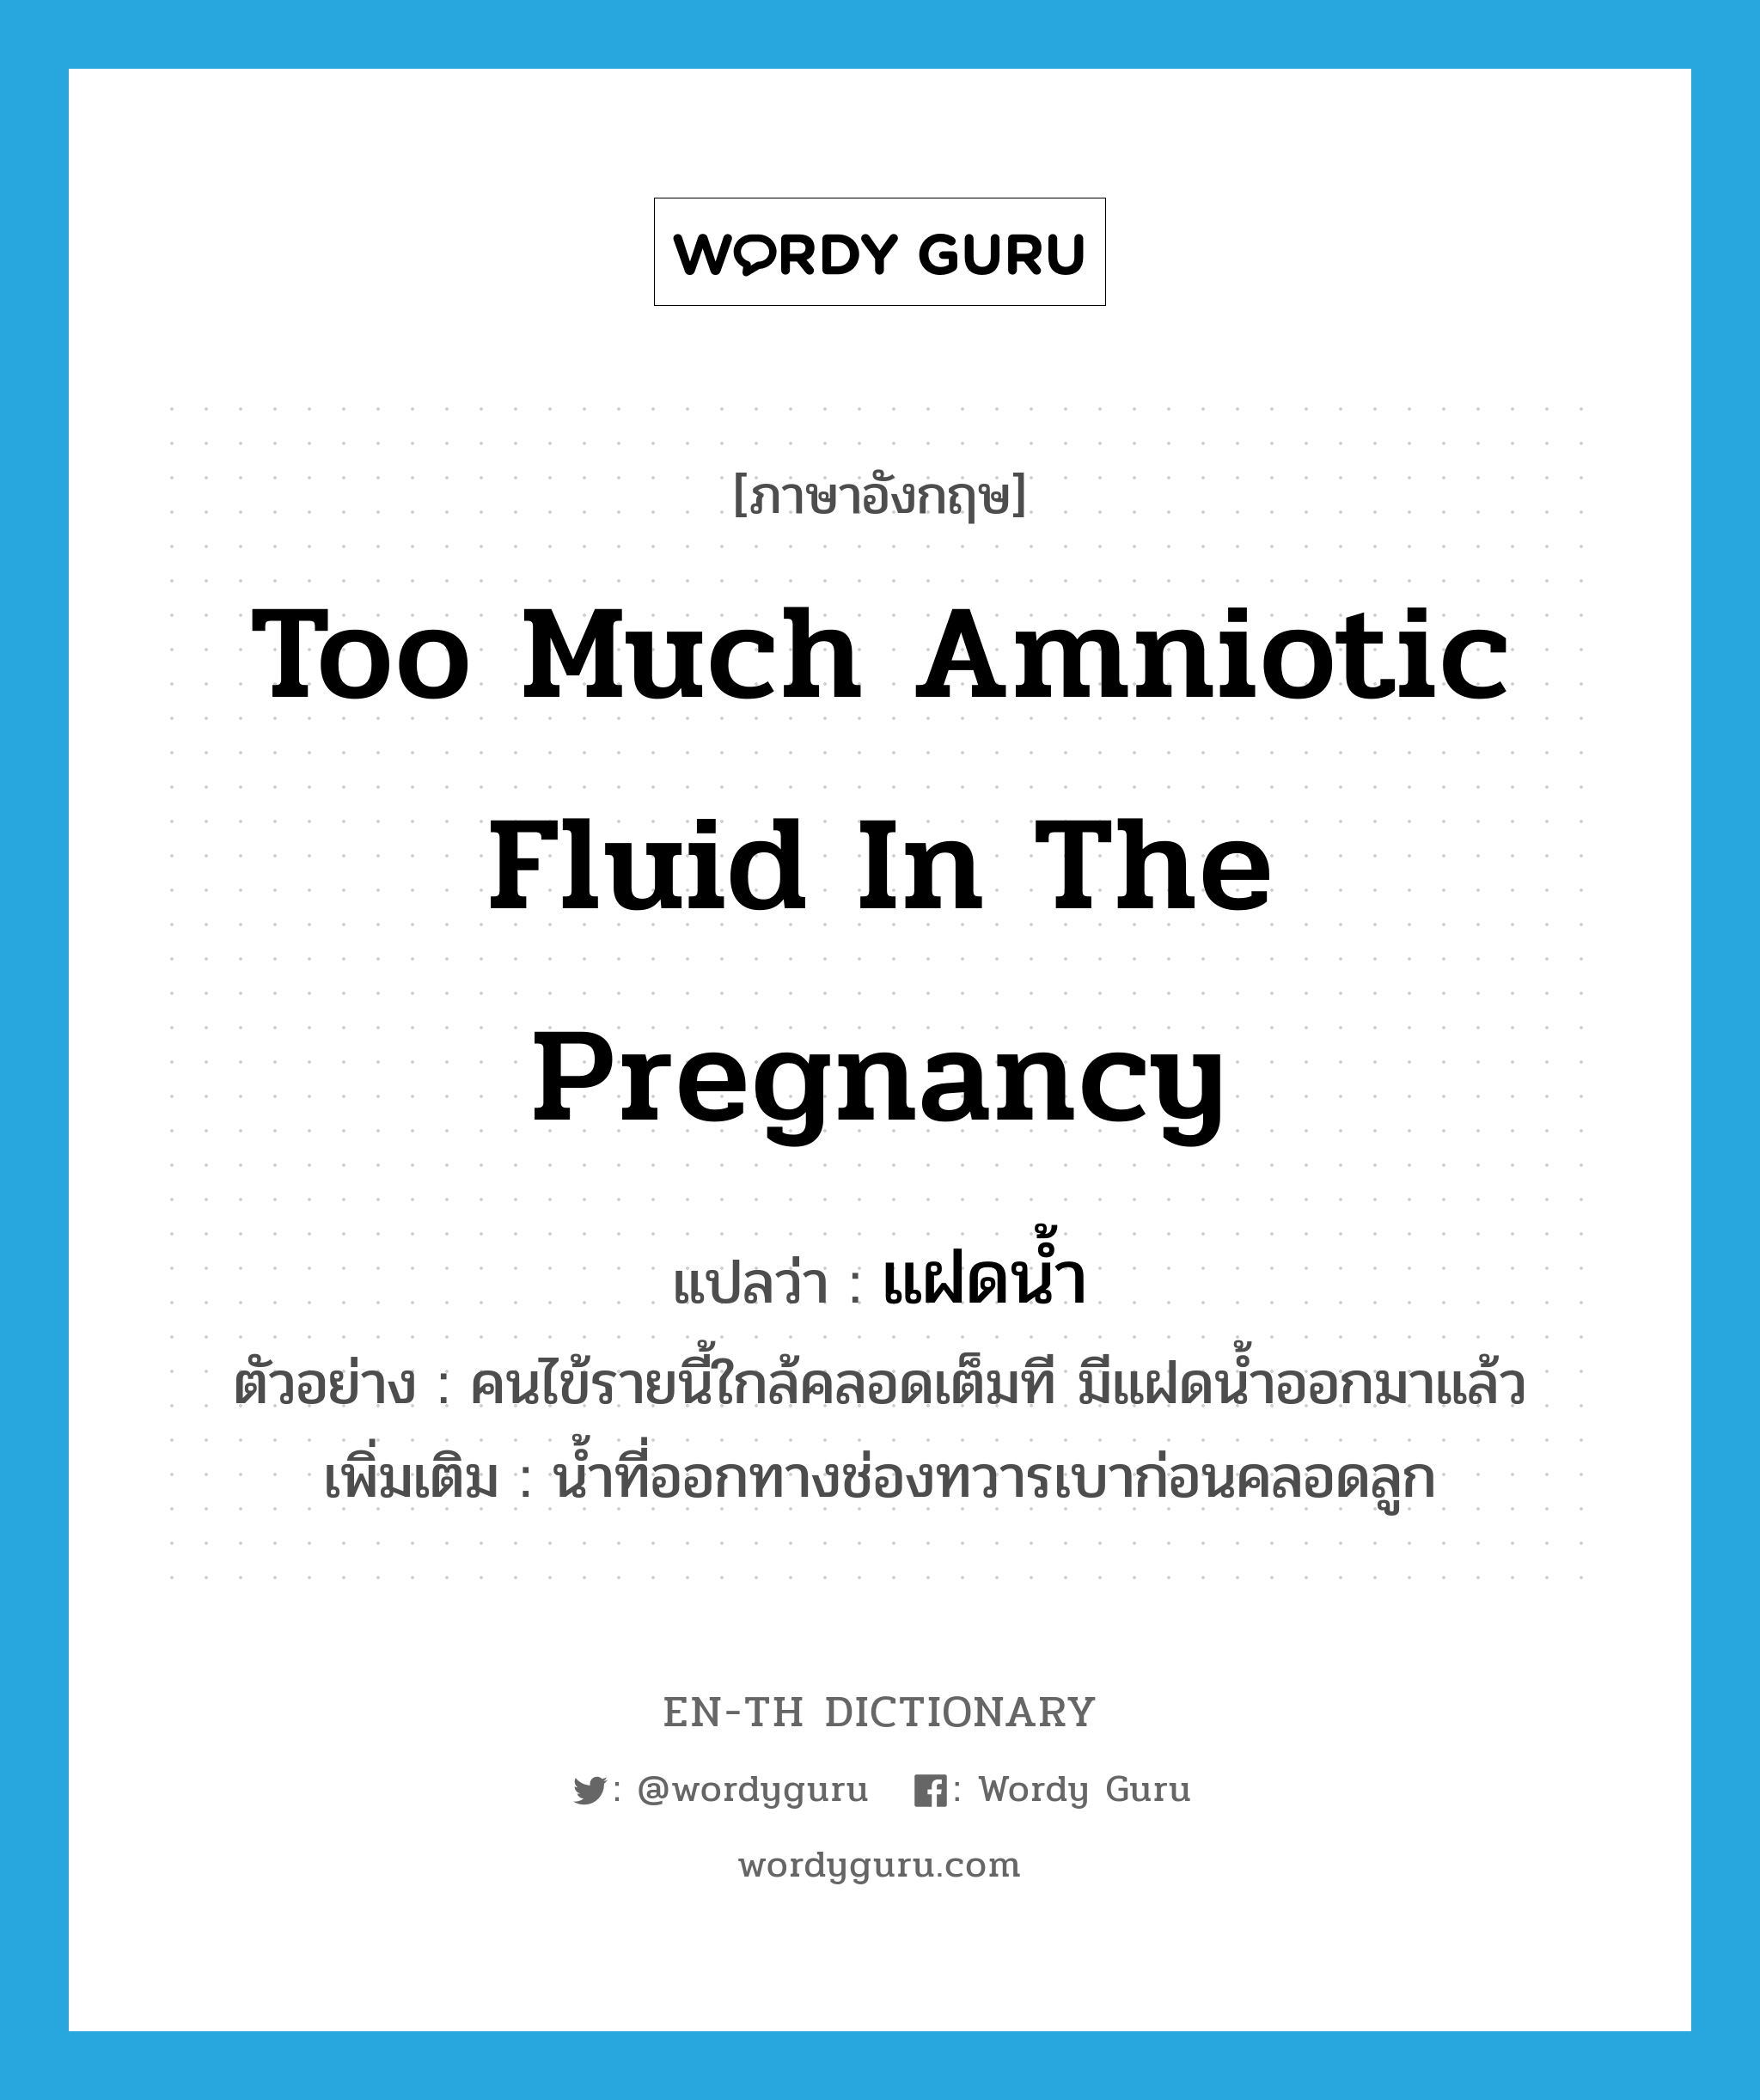 แฝดน้ำ ภาษาอังกฤษ?, คำศัพท์ภาษาอังกฤษ แฝดน้ำ แปลว่า too much amniotic fluid in the pregnancy ประเภท N ตัวอย่าง คนไข้รายนี้ใกล้คลอดเต็มที มีแฝดน้ำออกมาแล้ว เพิ่มเติม น้ำที่ออกทางช่องทวารเบาก่อนคลอดลูก หมวด N